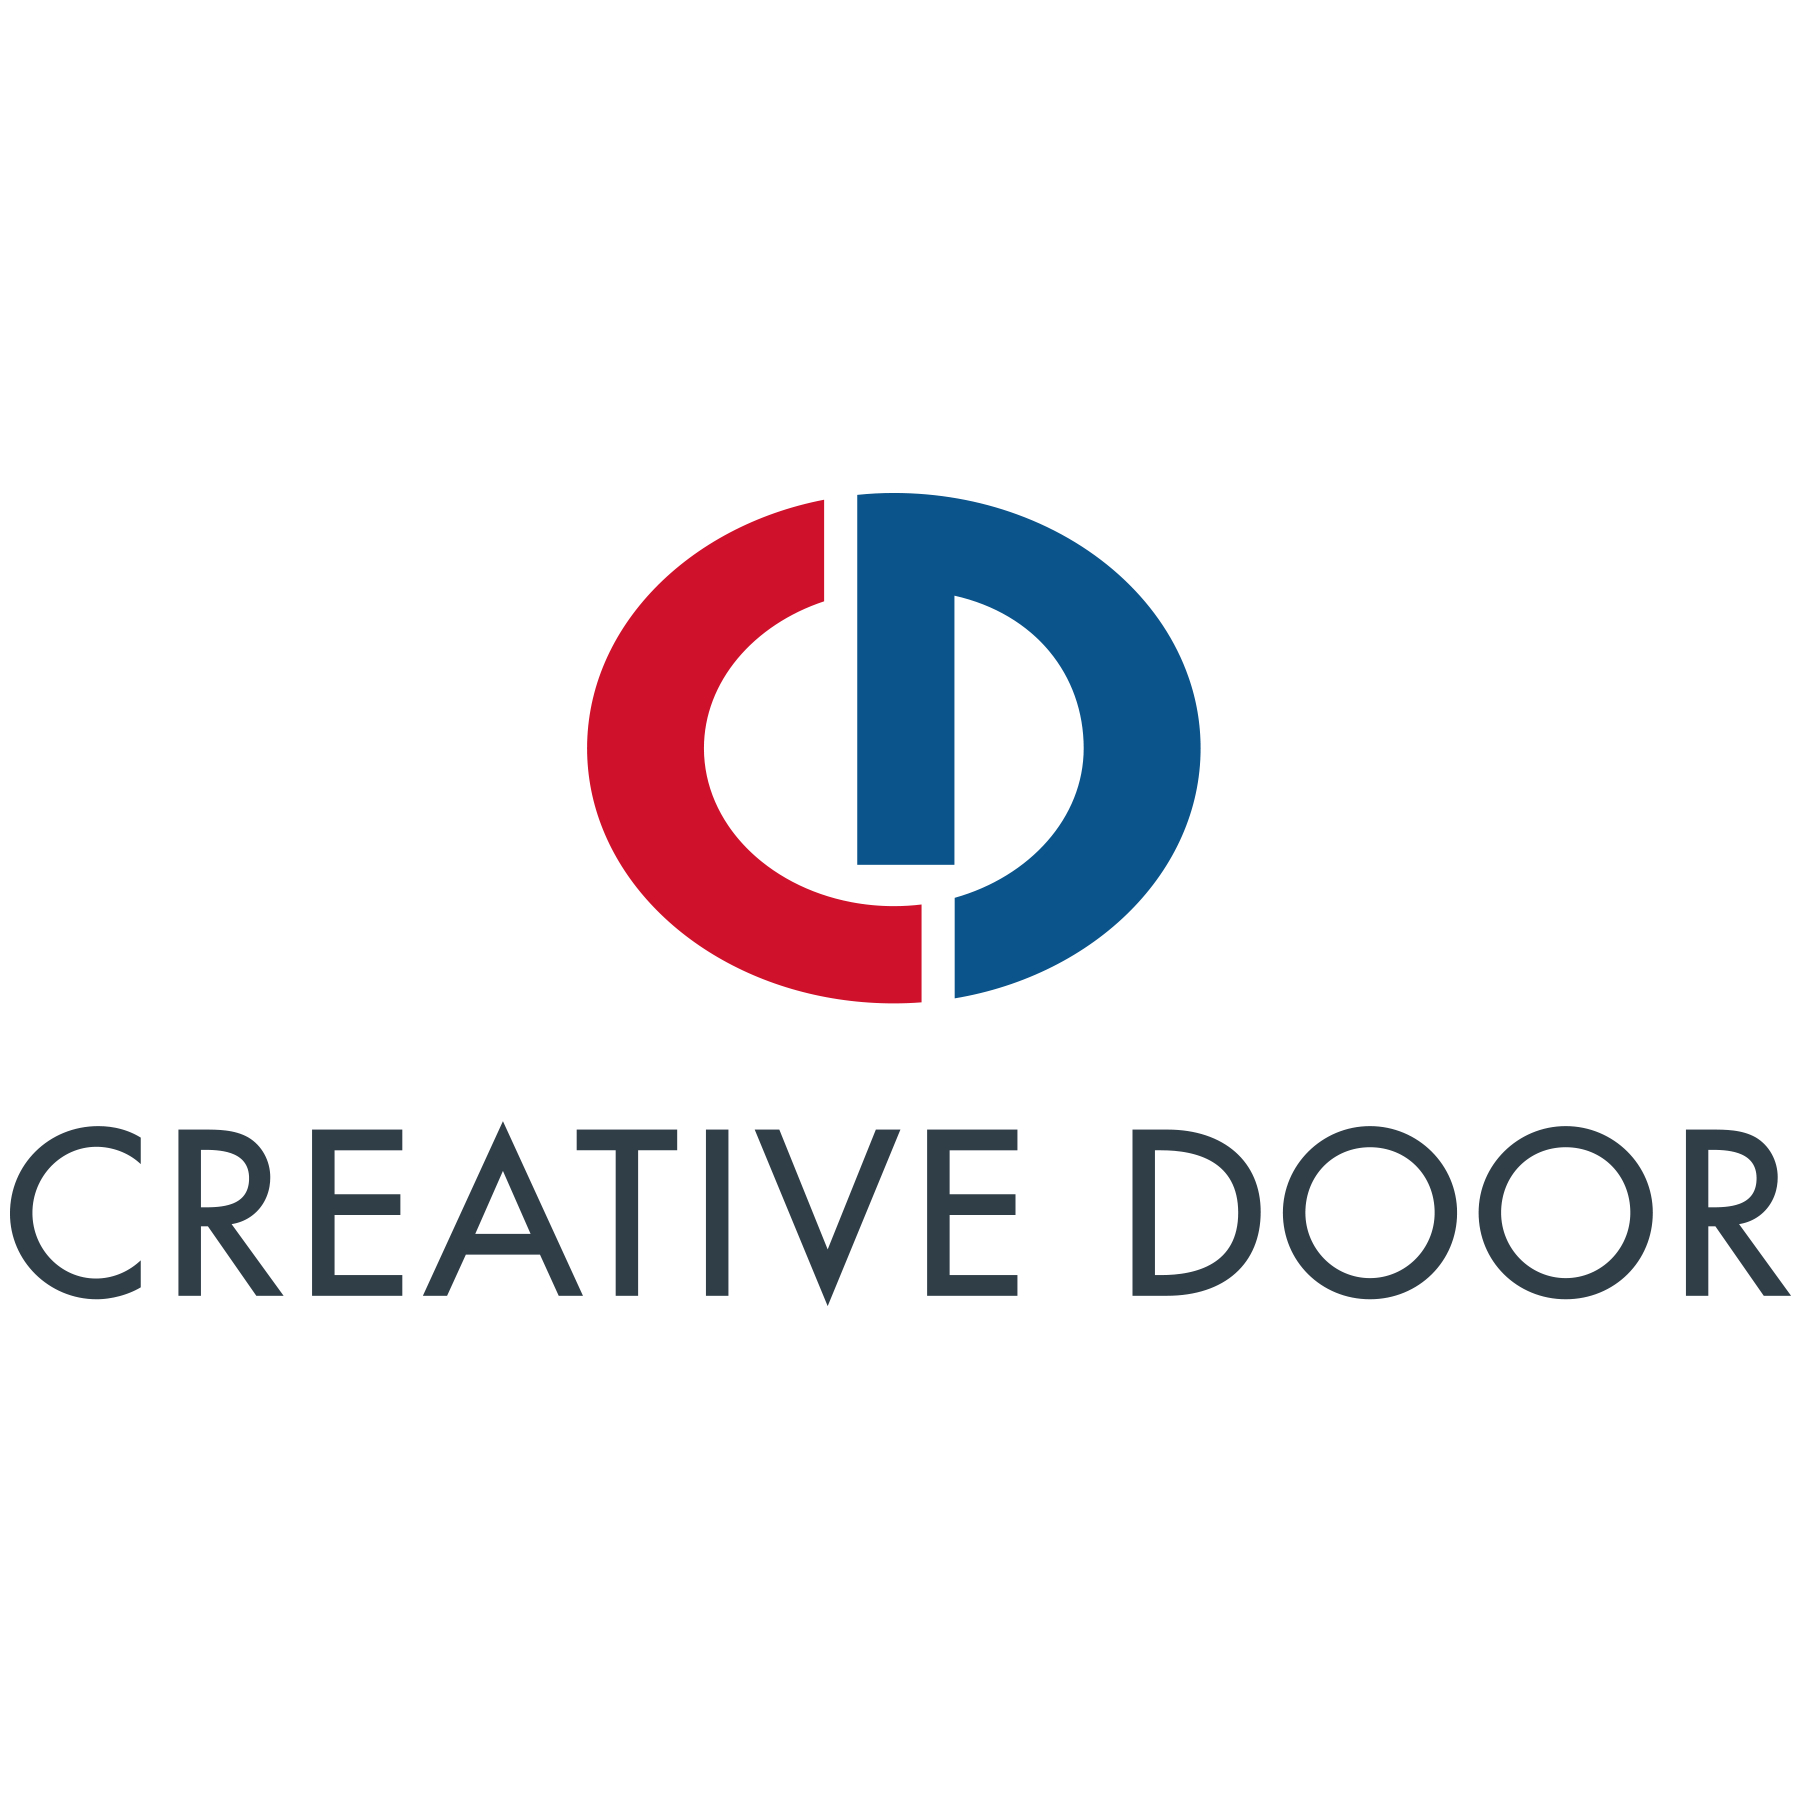 Creative Door Services Ltd - Entretien et réparation de portes